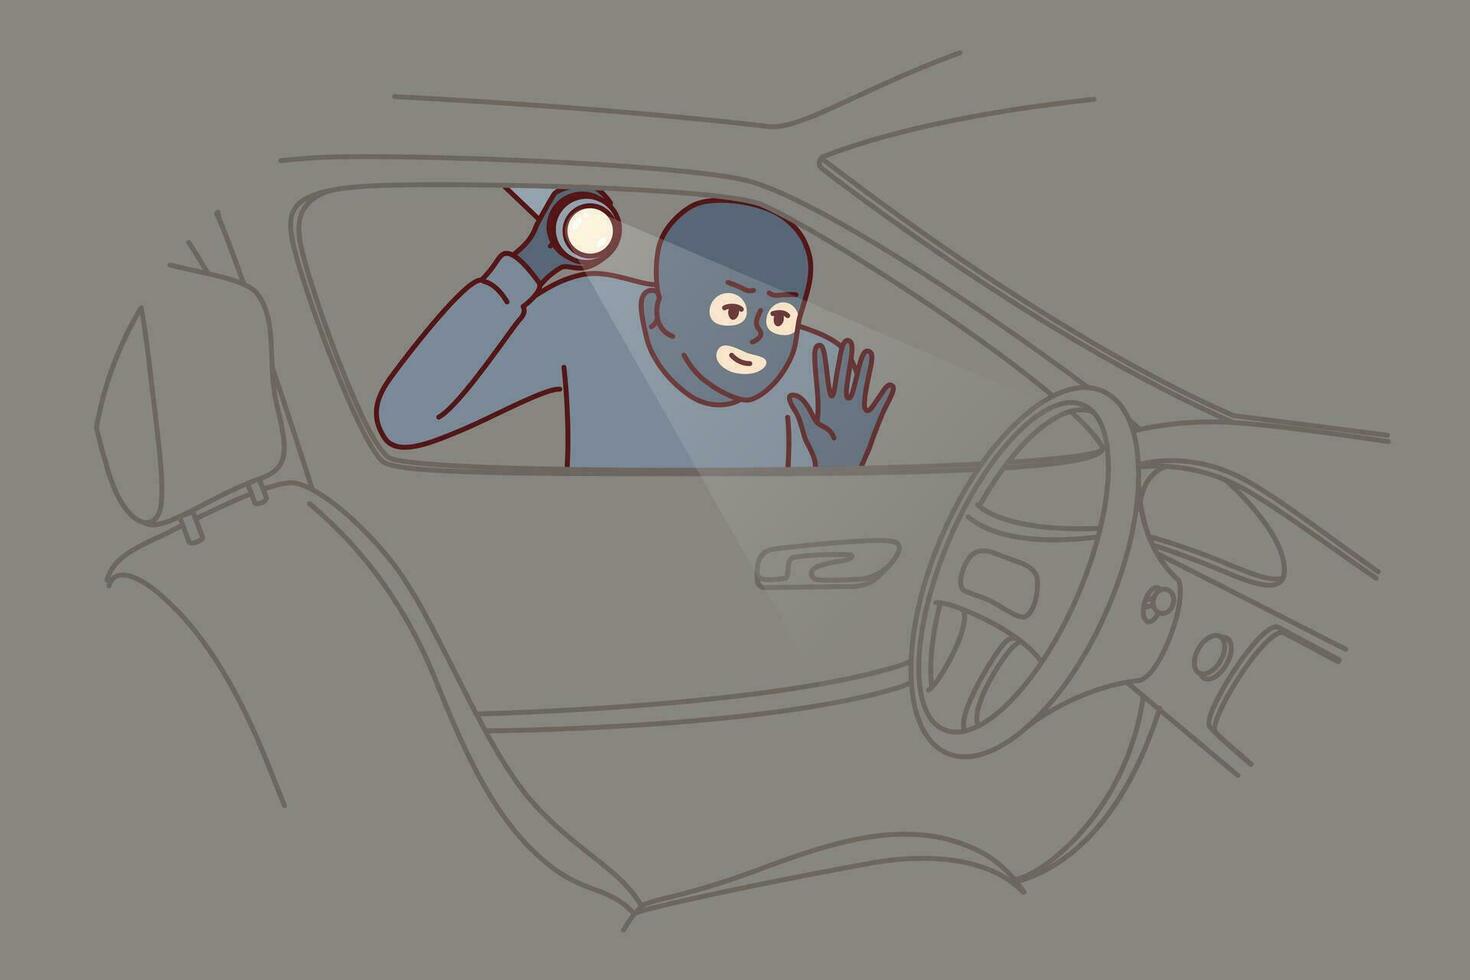 ladrão carrinhos perto carro e brilha lanterna para dentro interior roubando veículo a partir de garagem ou estacionamento vetor